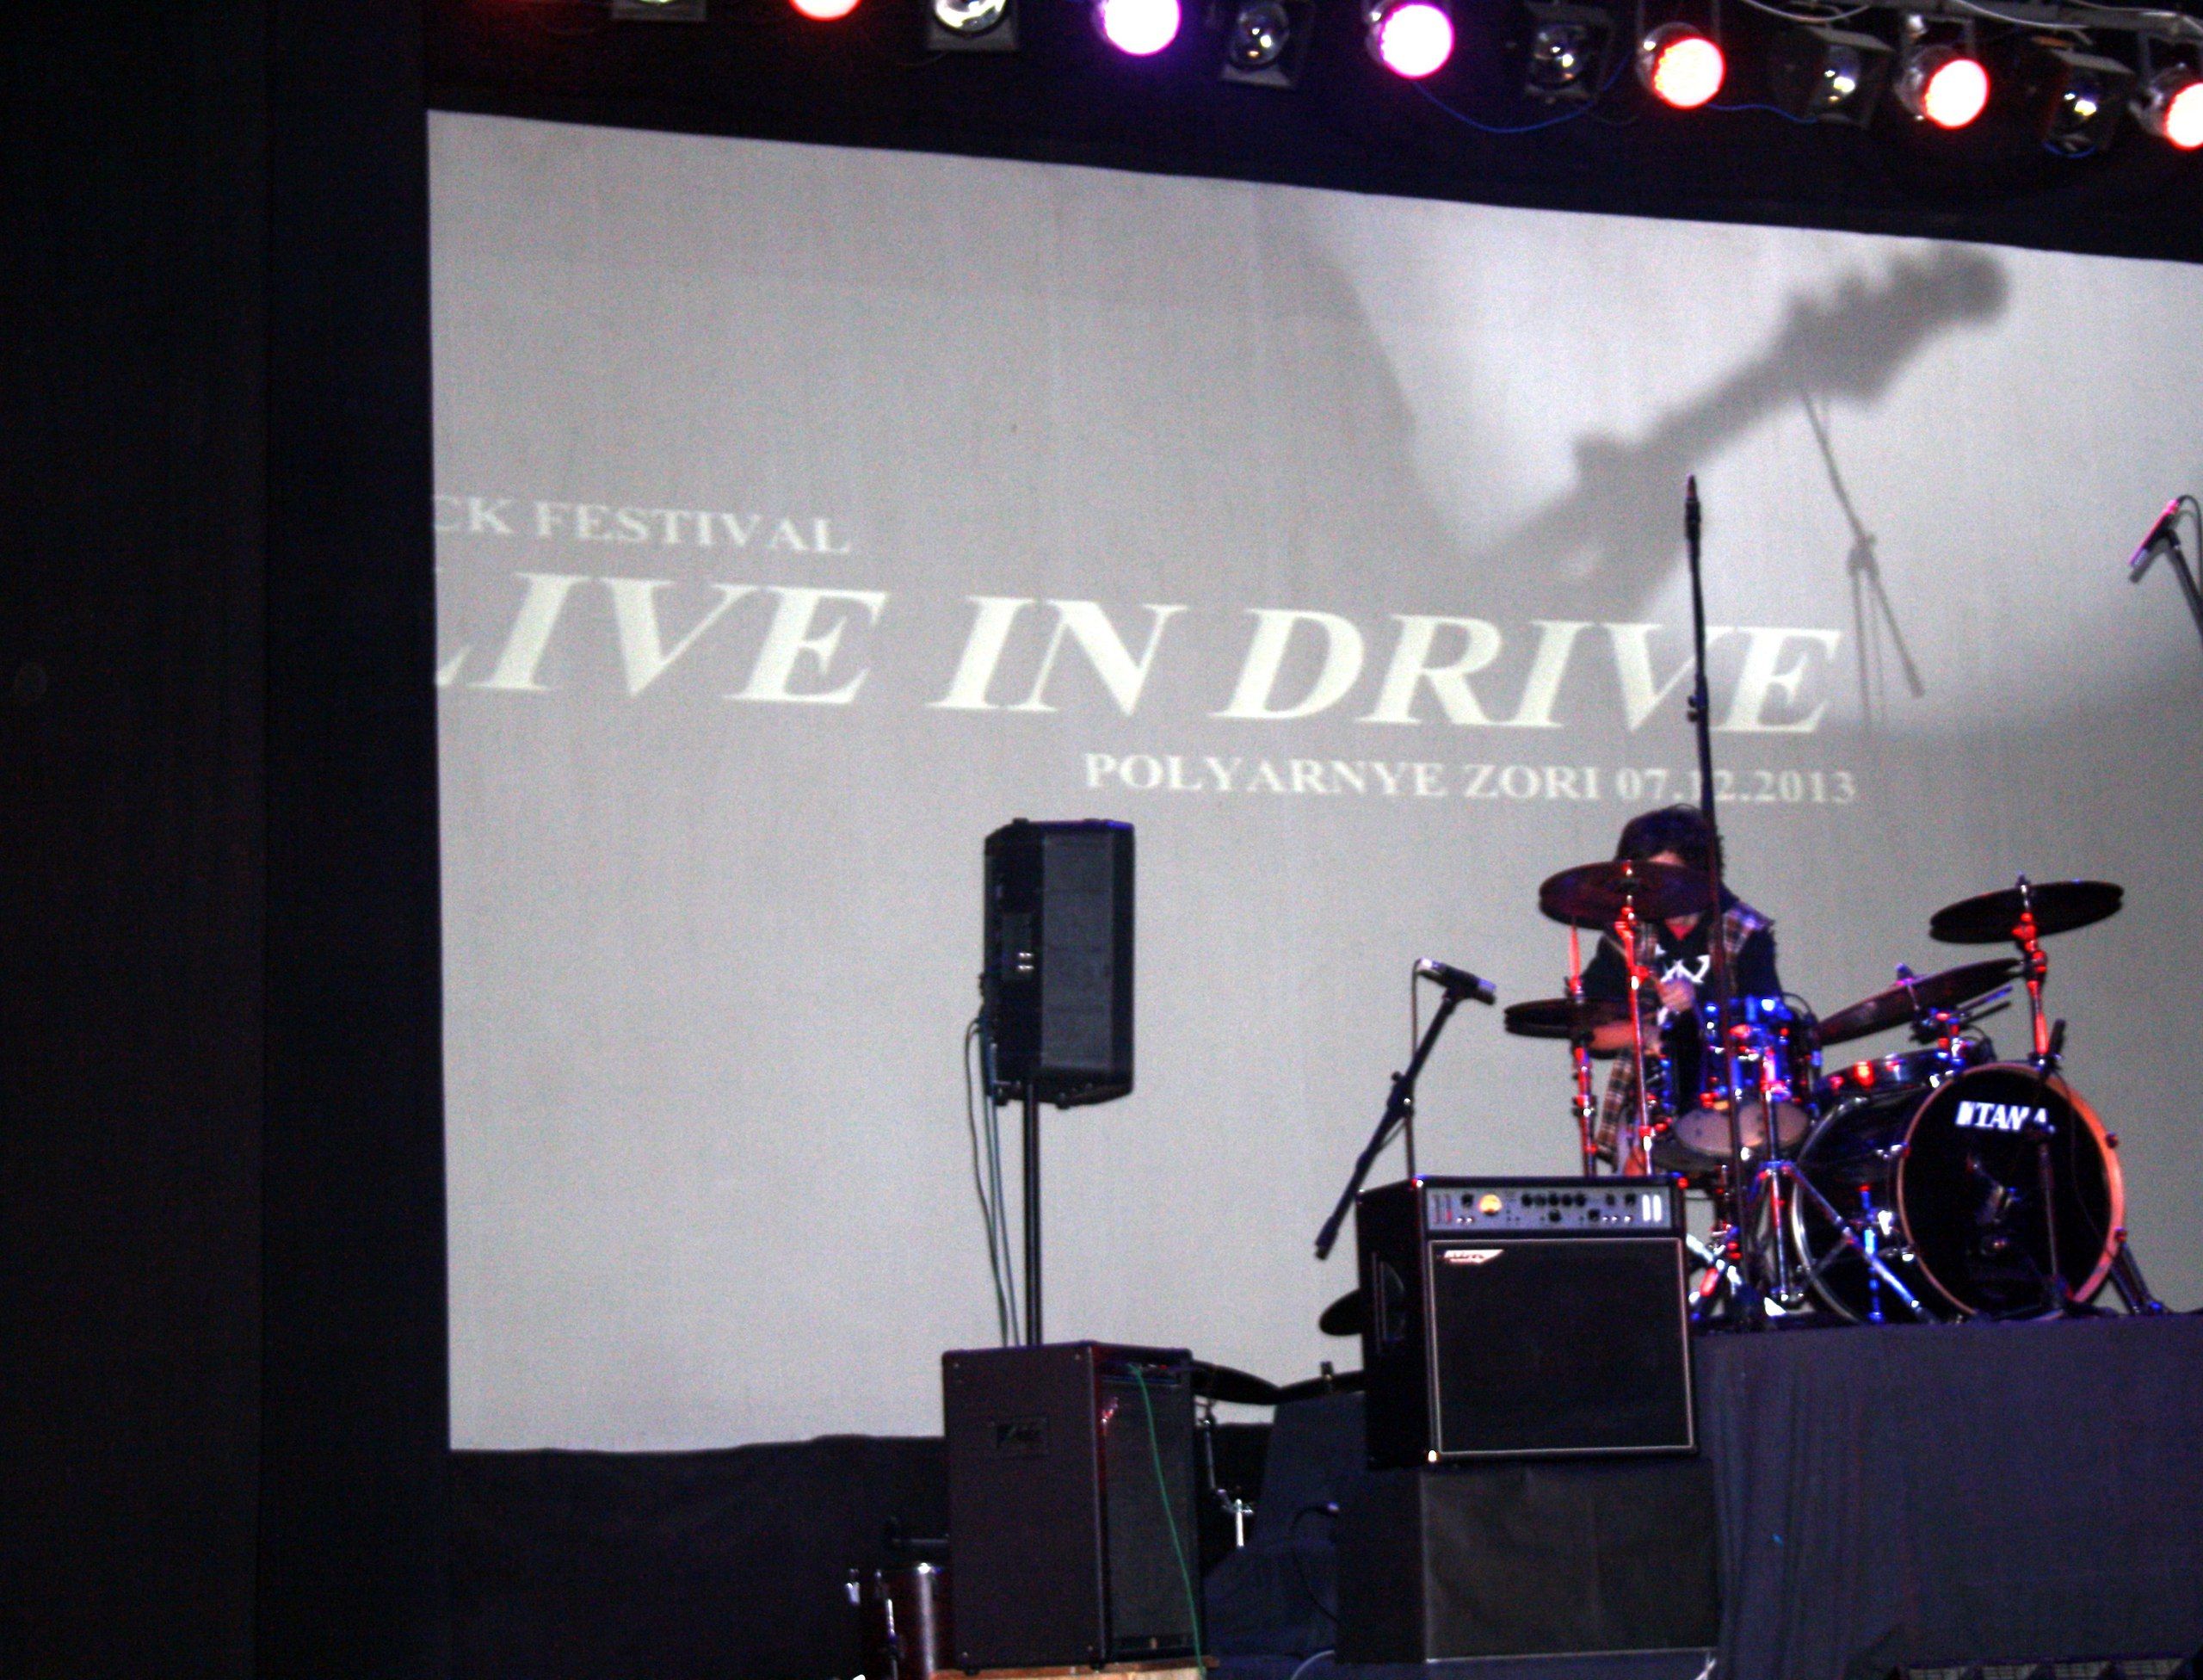 Live in Drive 2013 7_%n